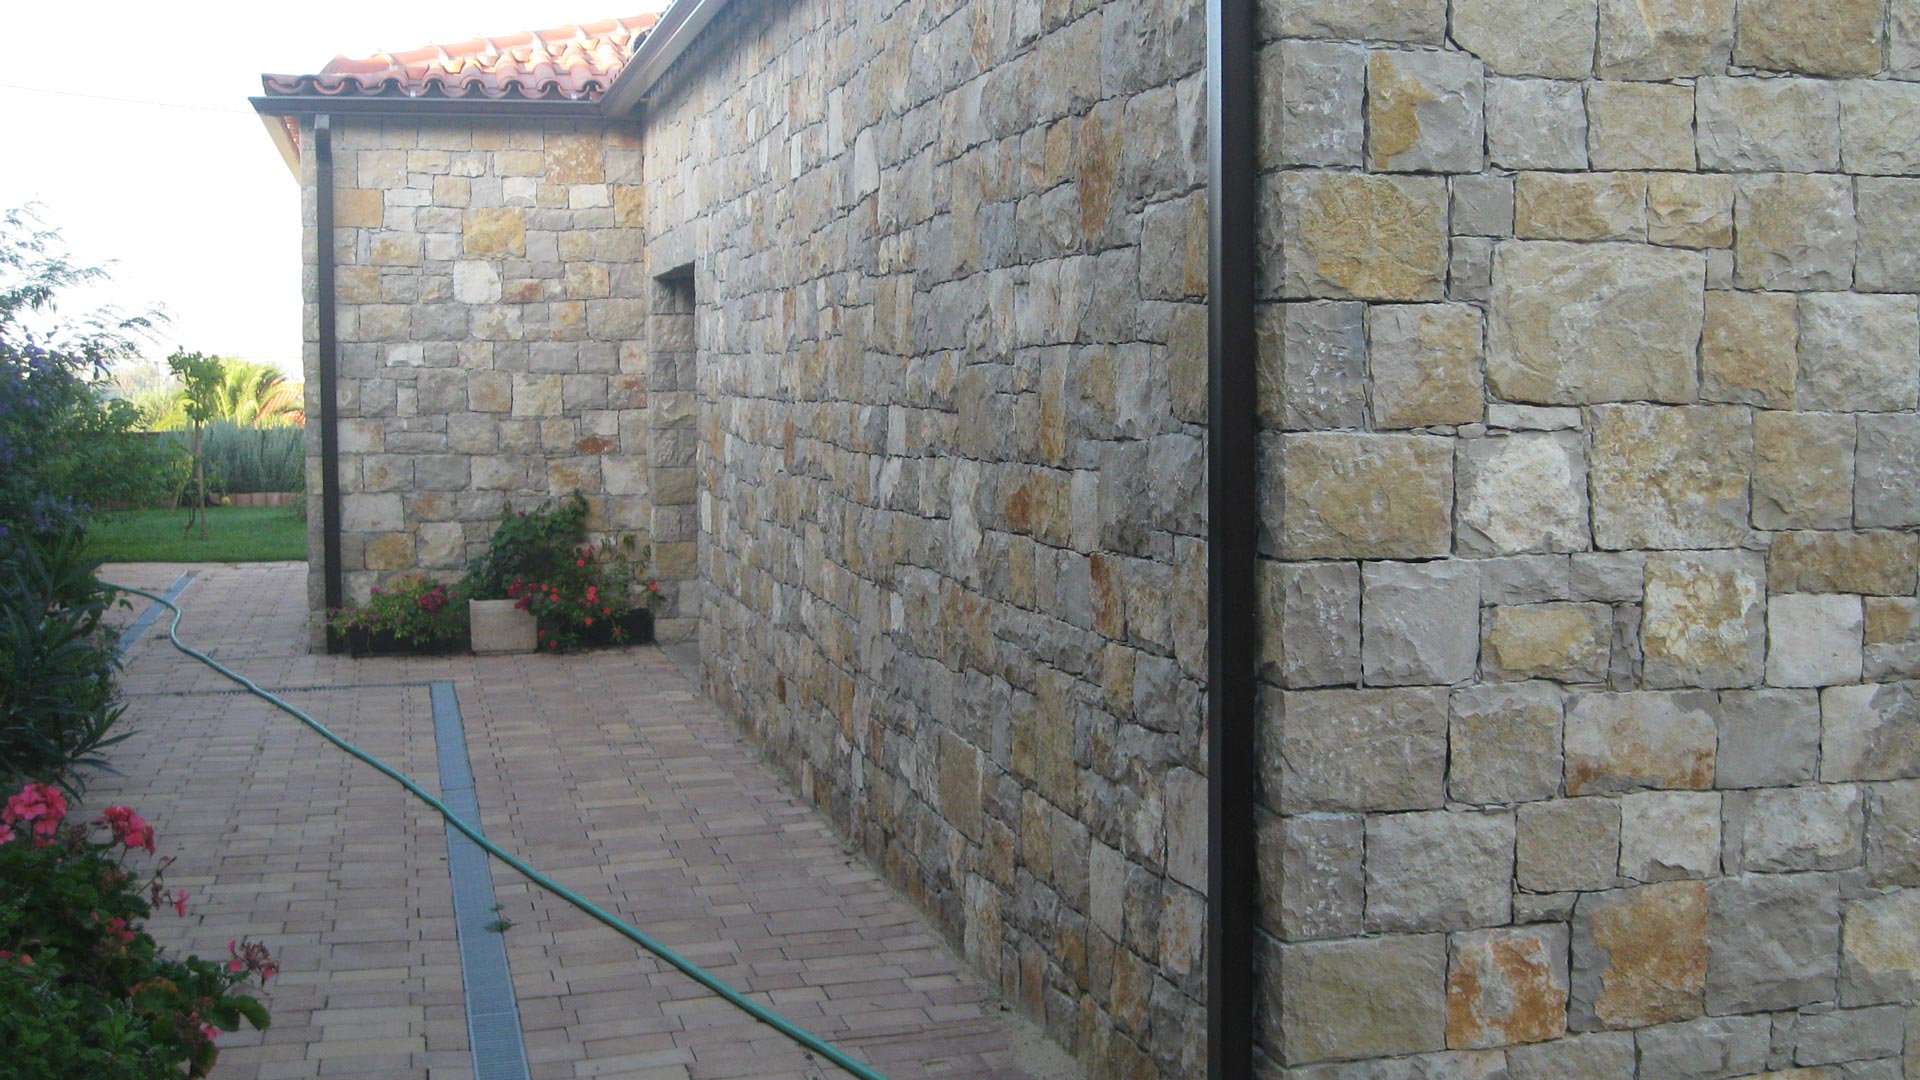 Pedra Rústica de Muro, Jocalçadas, Pedras de calçada portuguesa